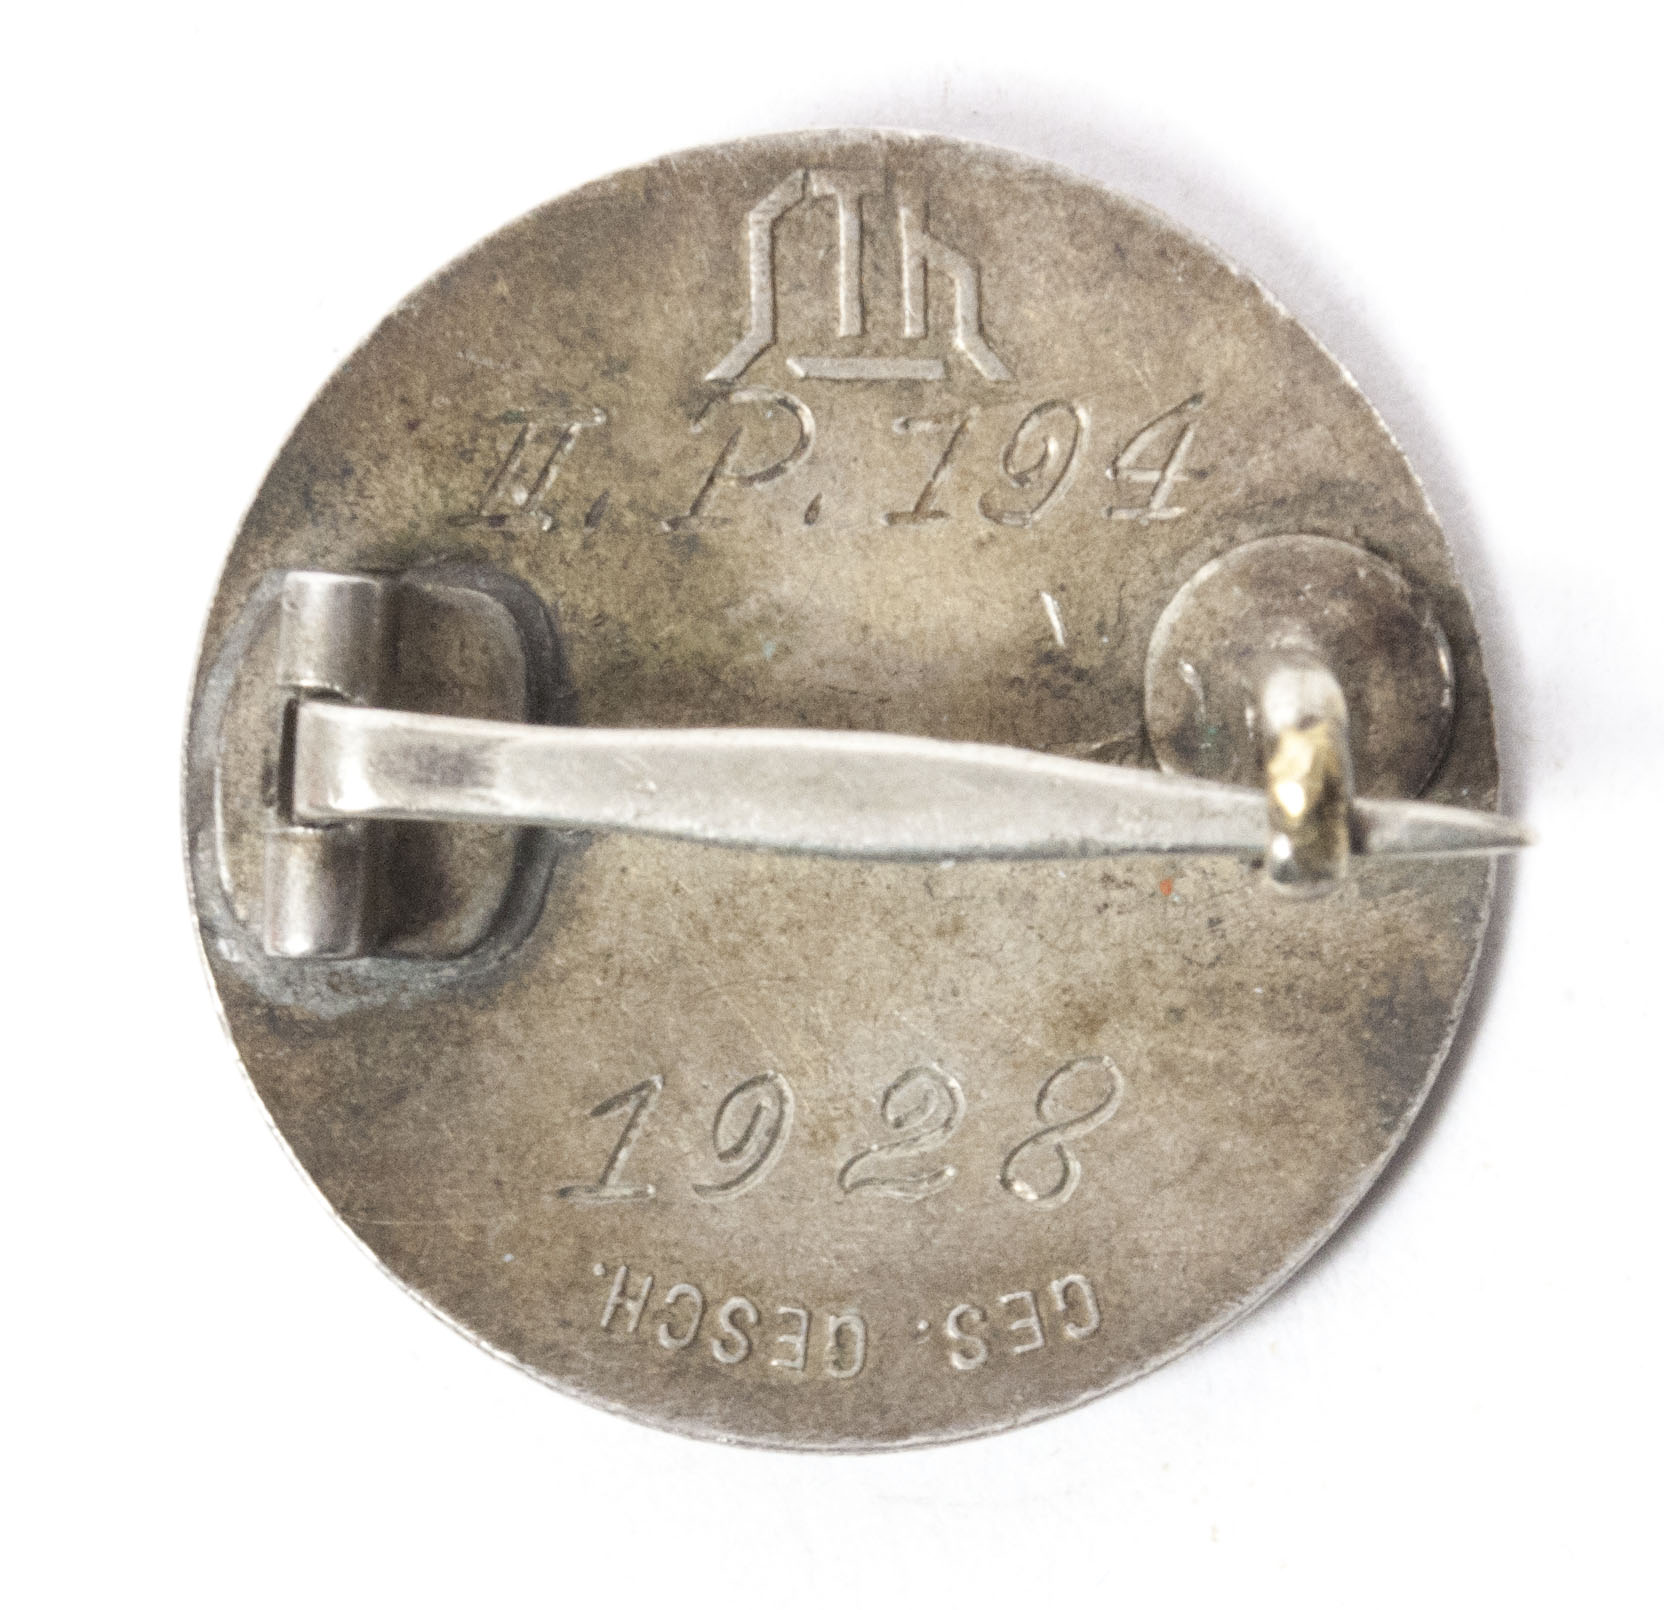 Stahlhelmbund Diensteintrittabzeichen Memberbadge 1928